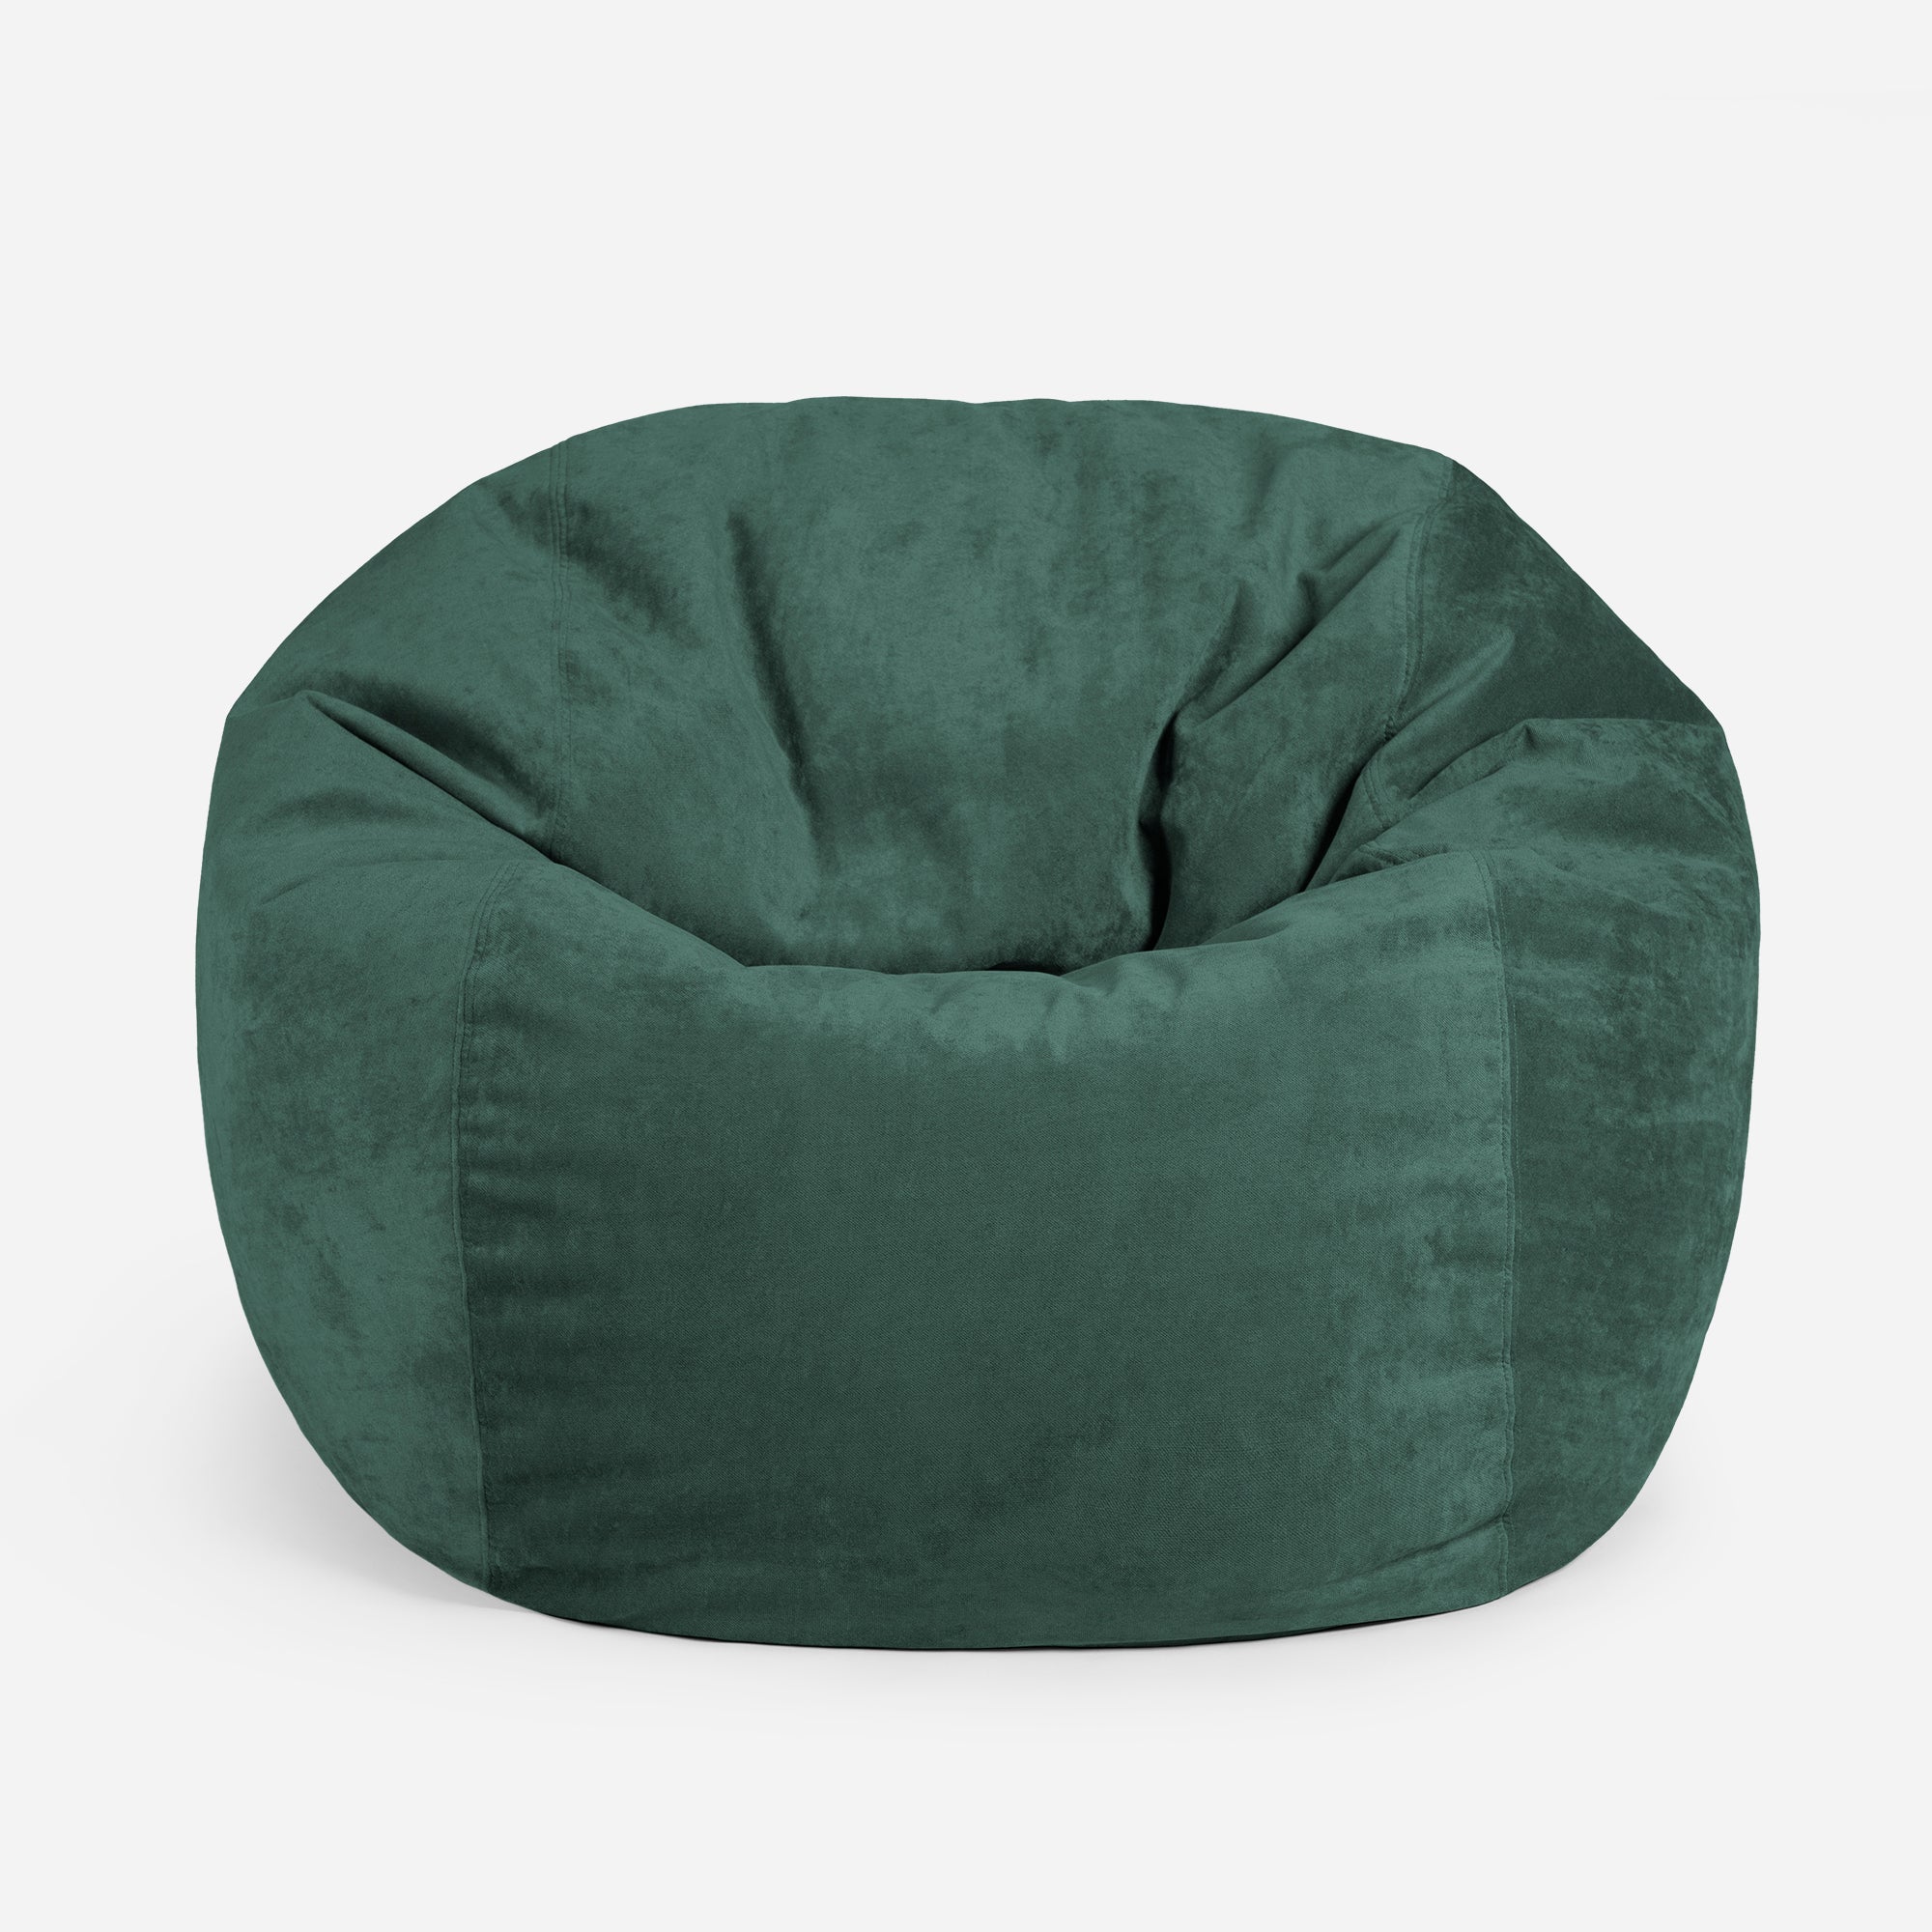 Sphere Aldo Green Bean bag